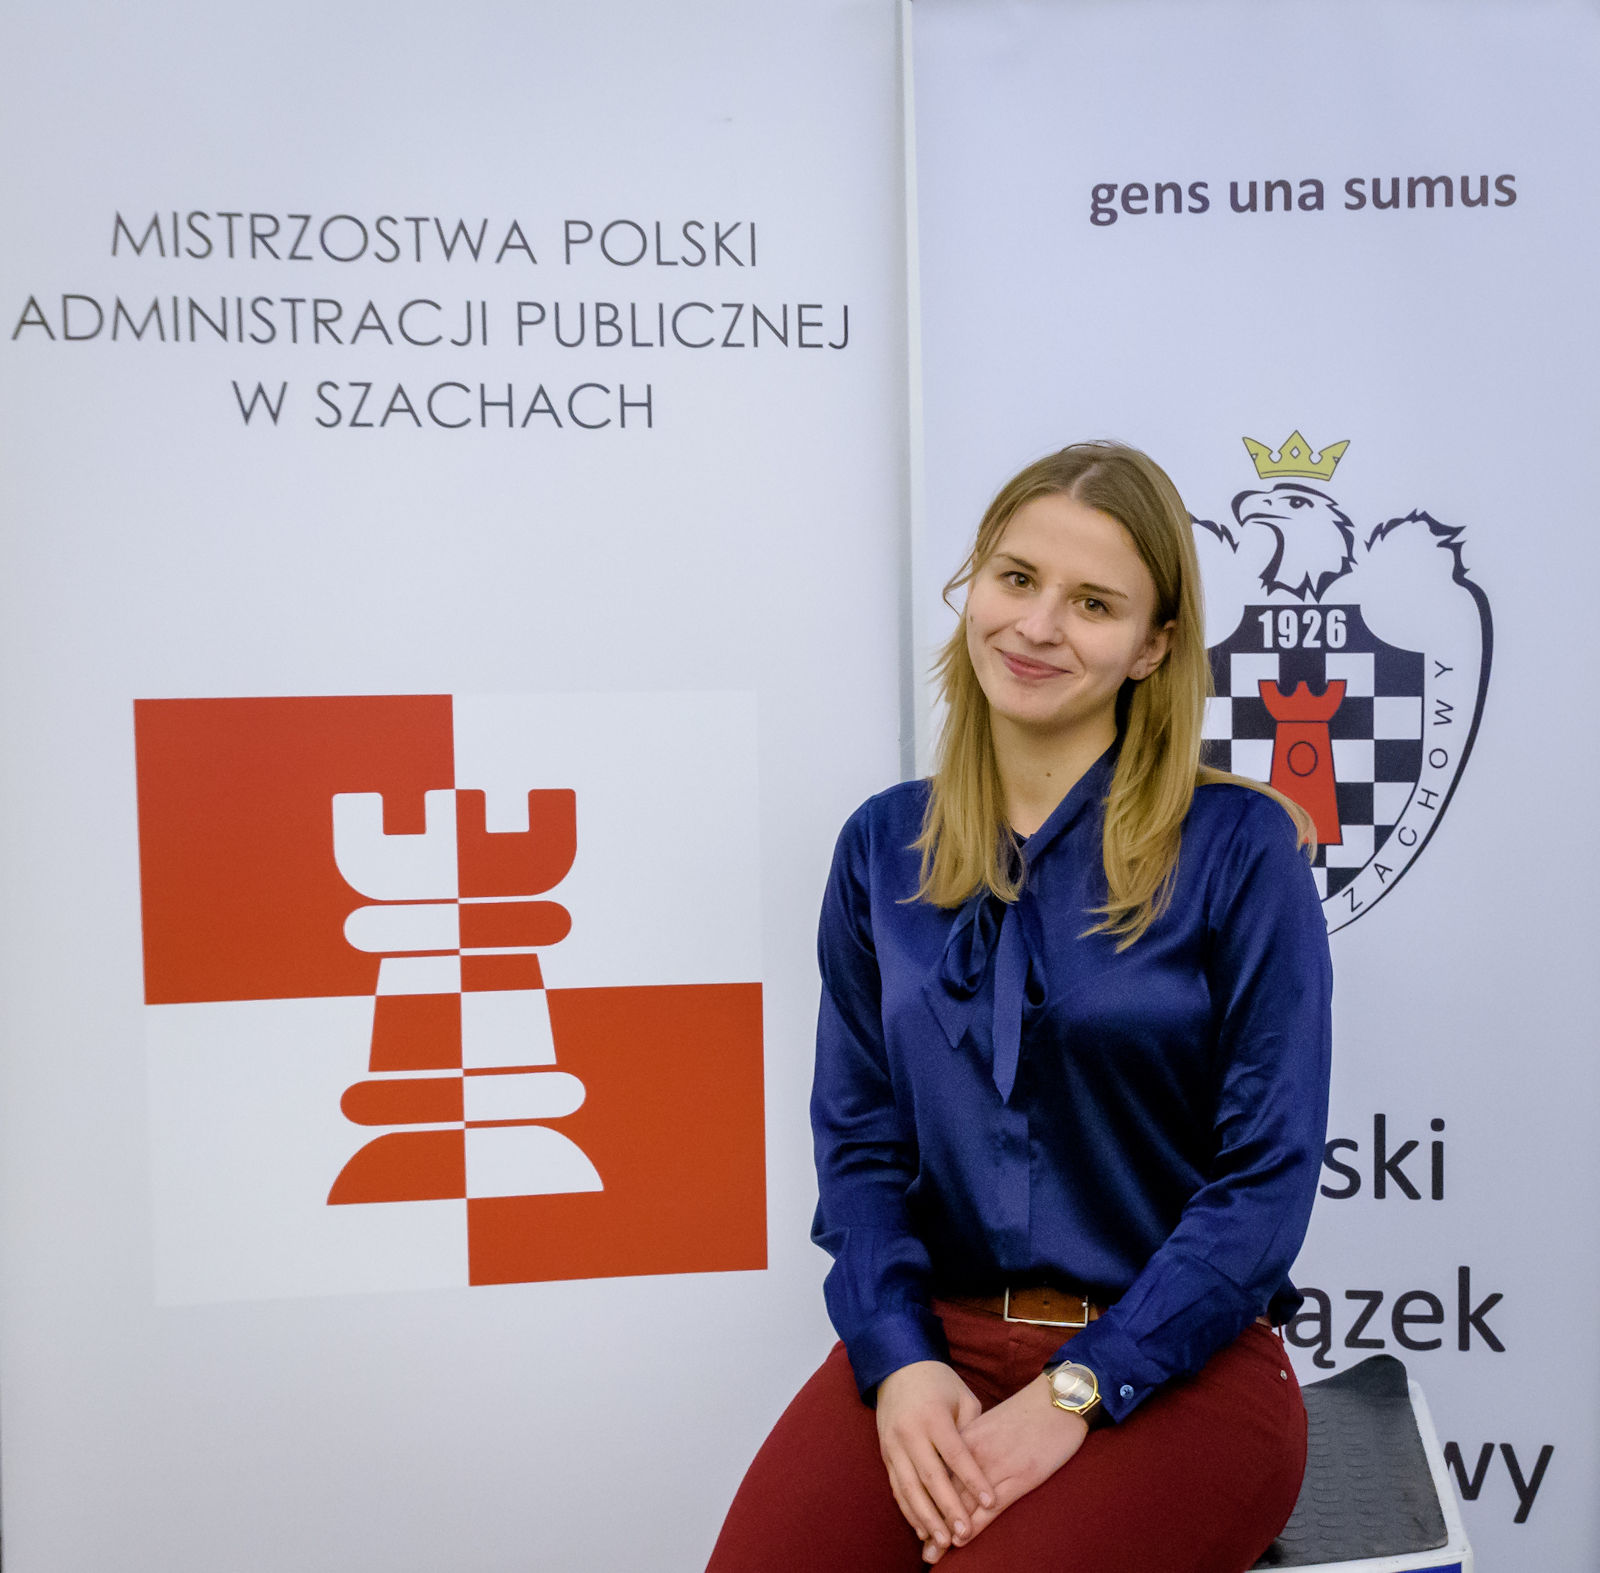 チェス女性棋士 Vesna Rozic